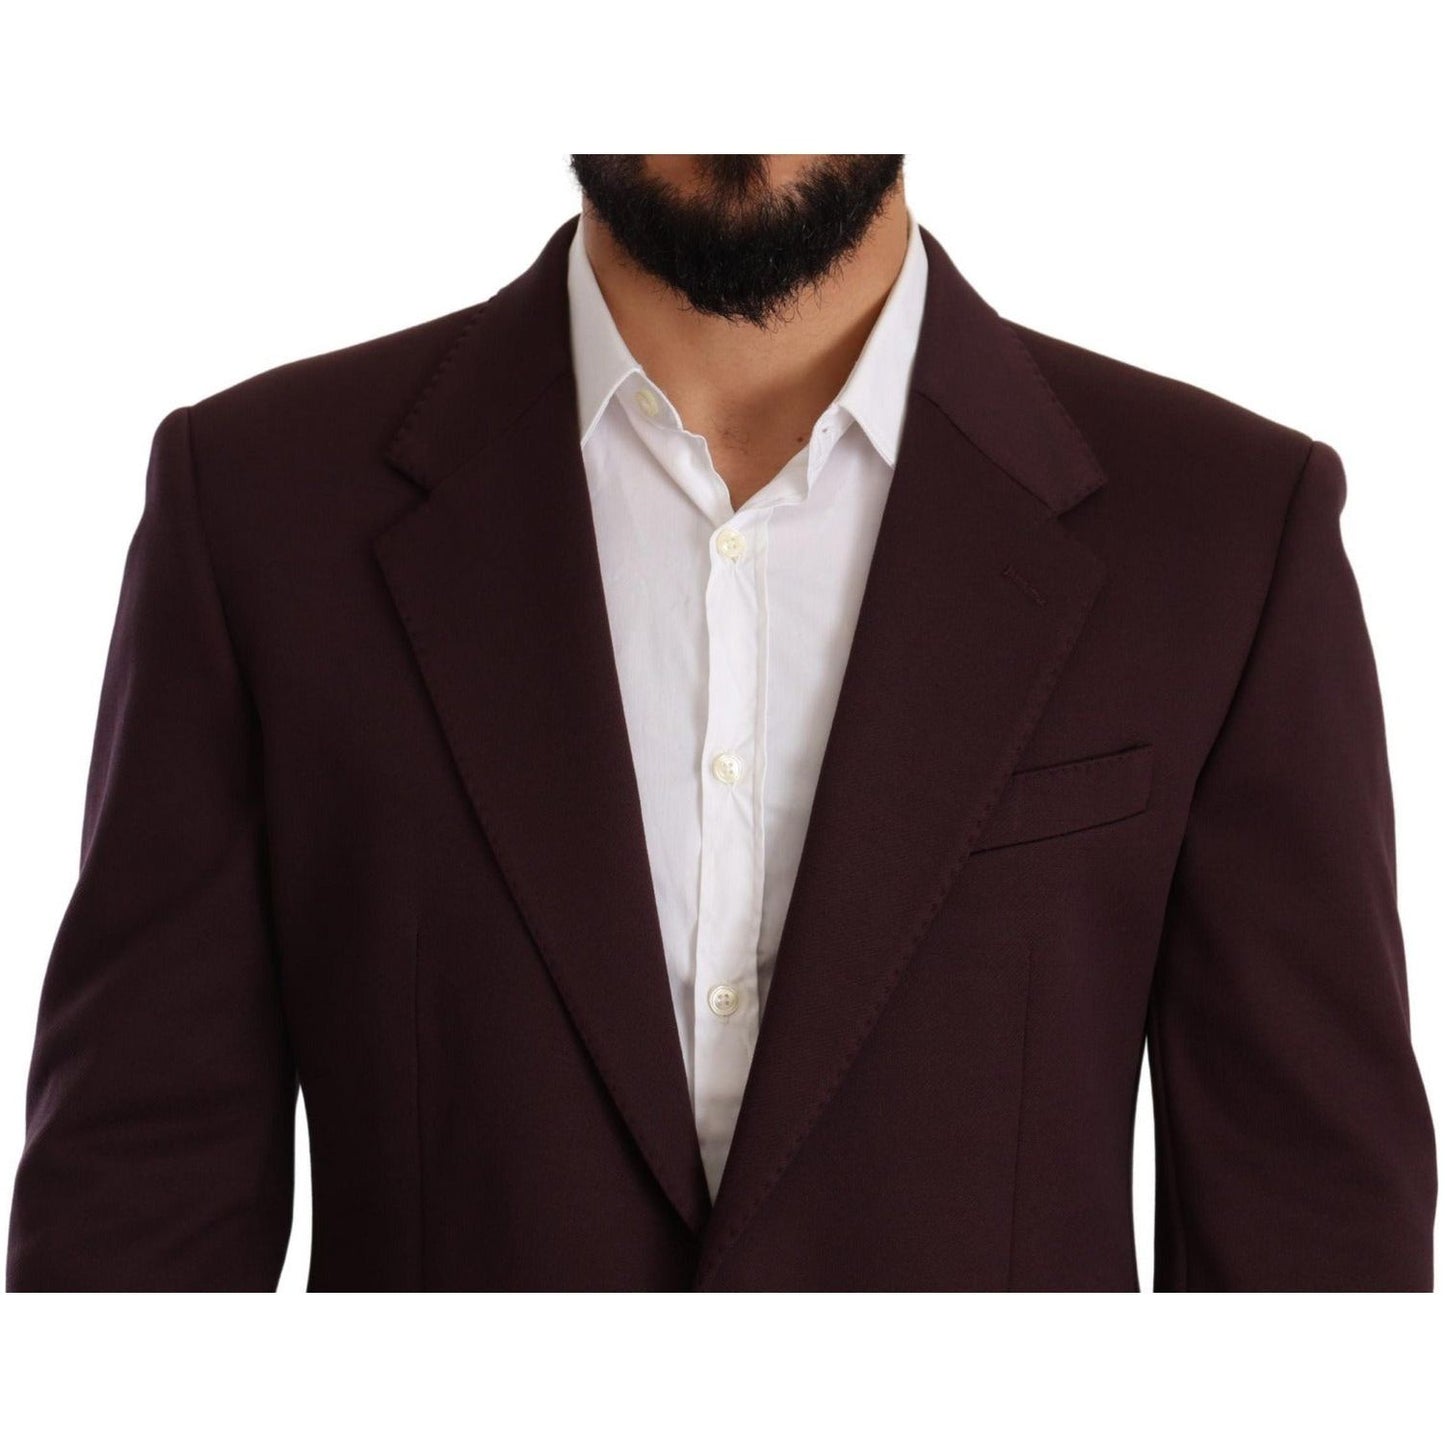 Dolce & Gabbana Elegant Indigo Slim Fit Blazer for Men purple-cotton-slim-blazer-jacket IMG_5270-scaled-9753716d-3cb.jpg